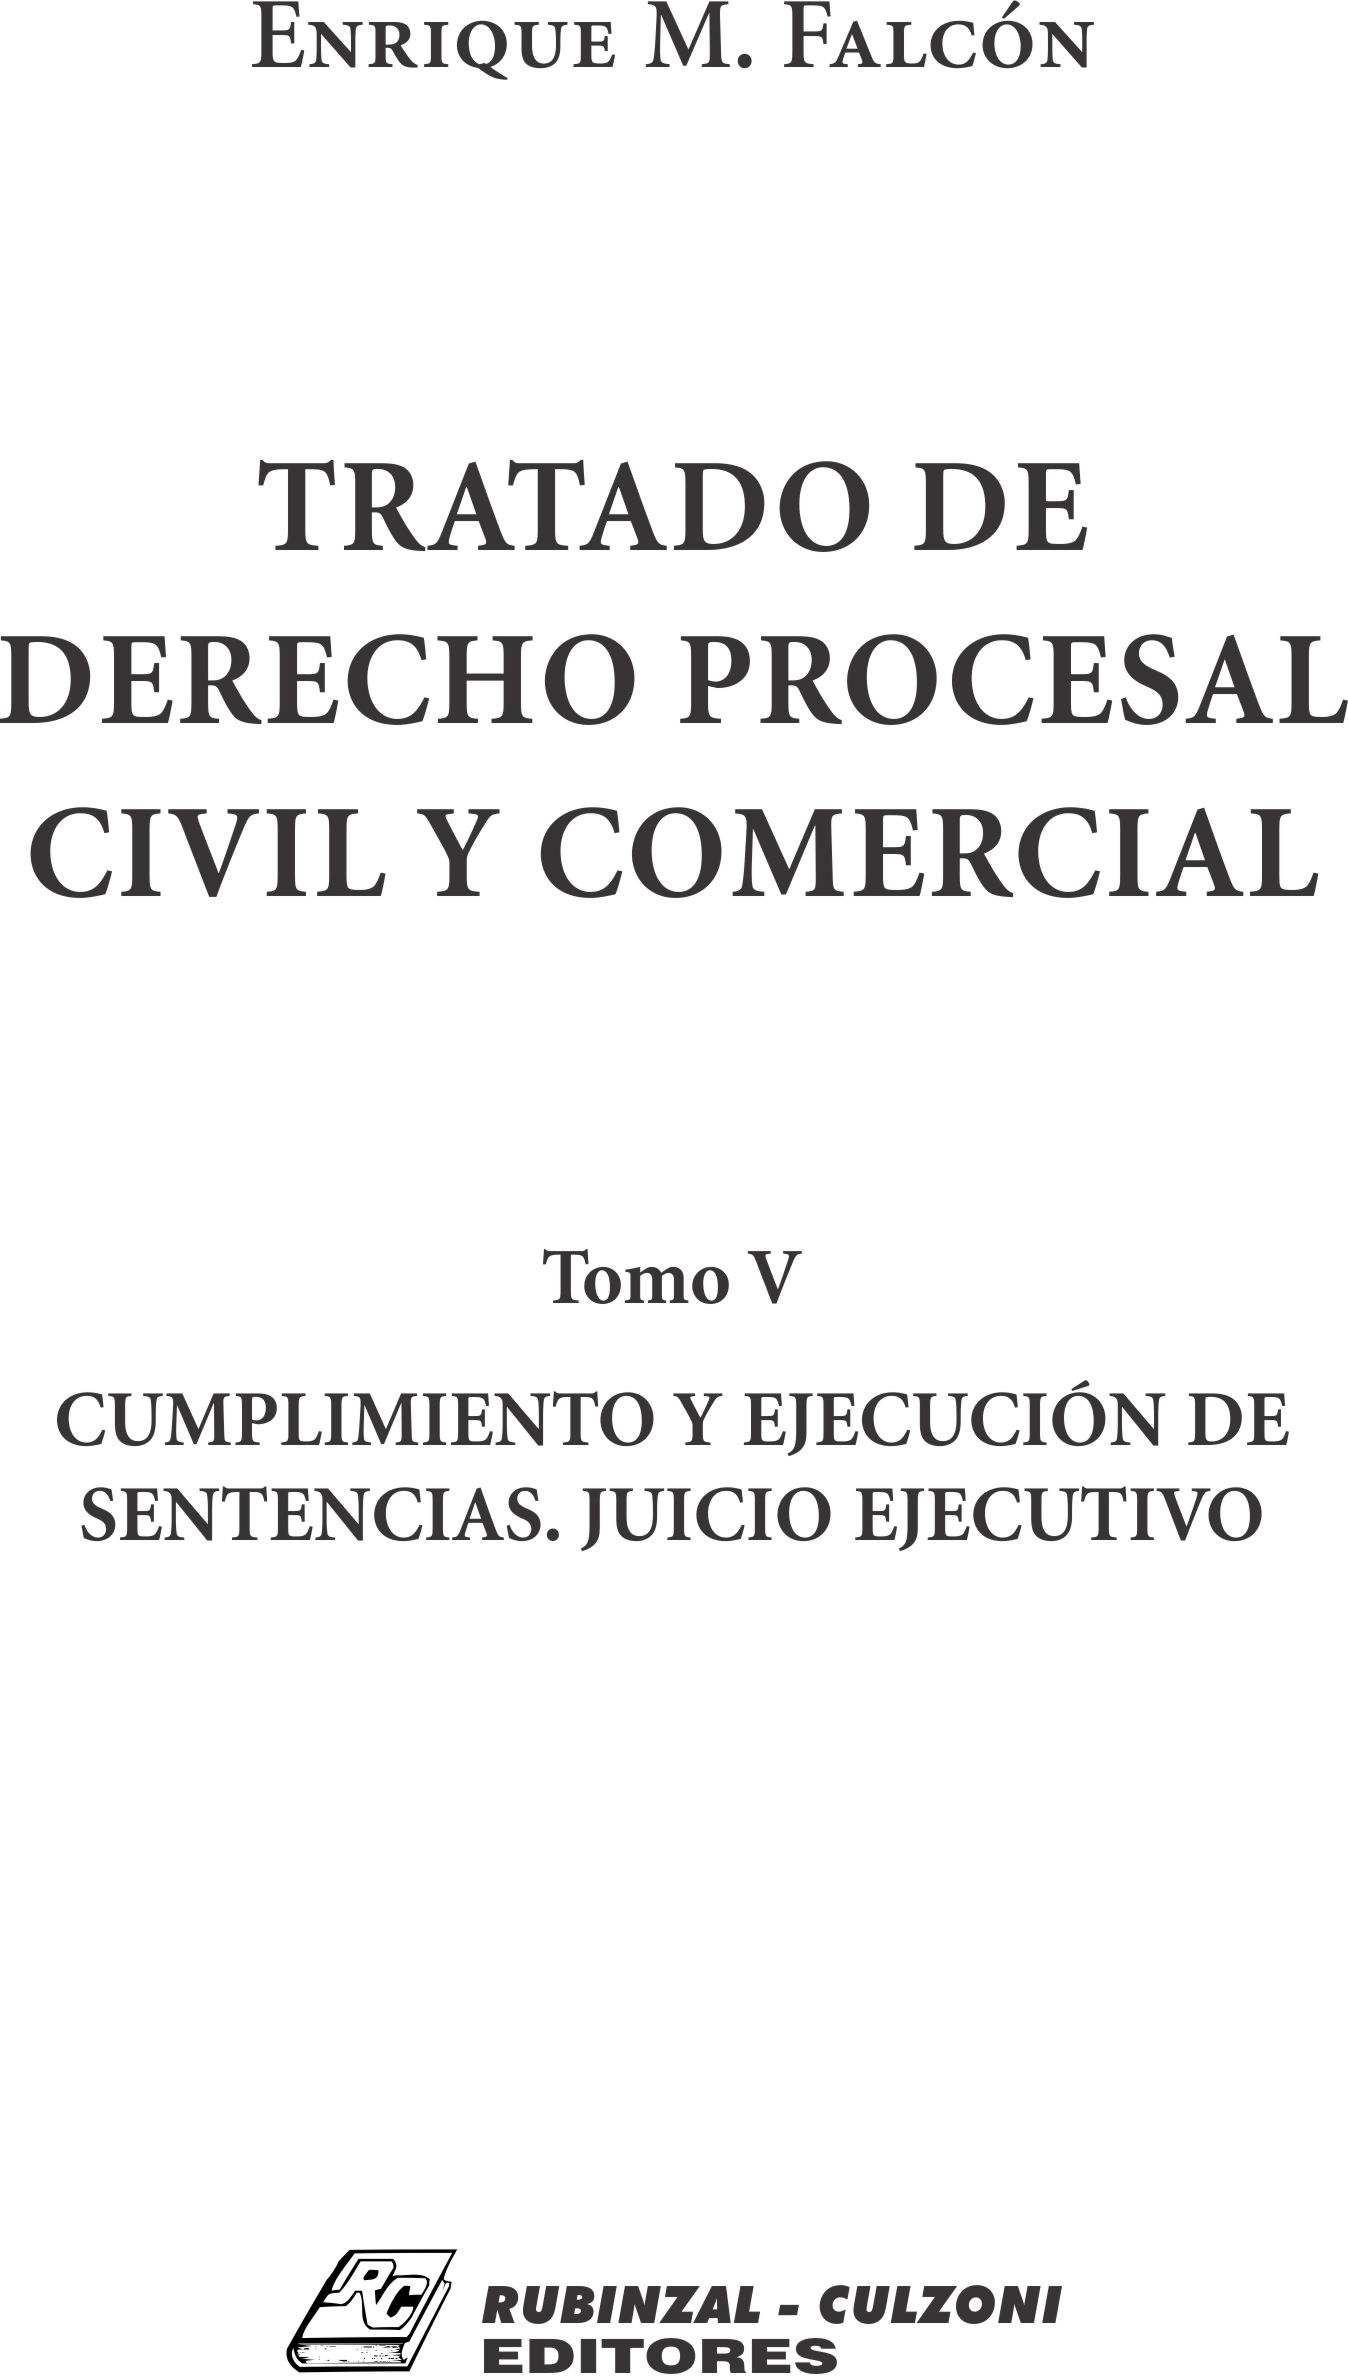 Tratado de Derecho Procesal Civil y Comercial. - Tomo V. Cumplimiento y ejecución de sentencias. Juicio ejecutivo.